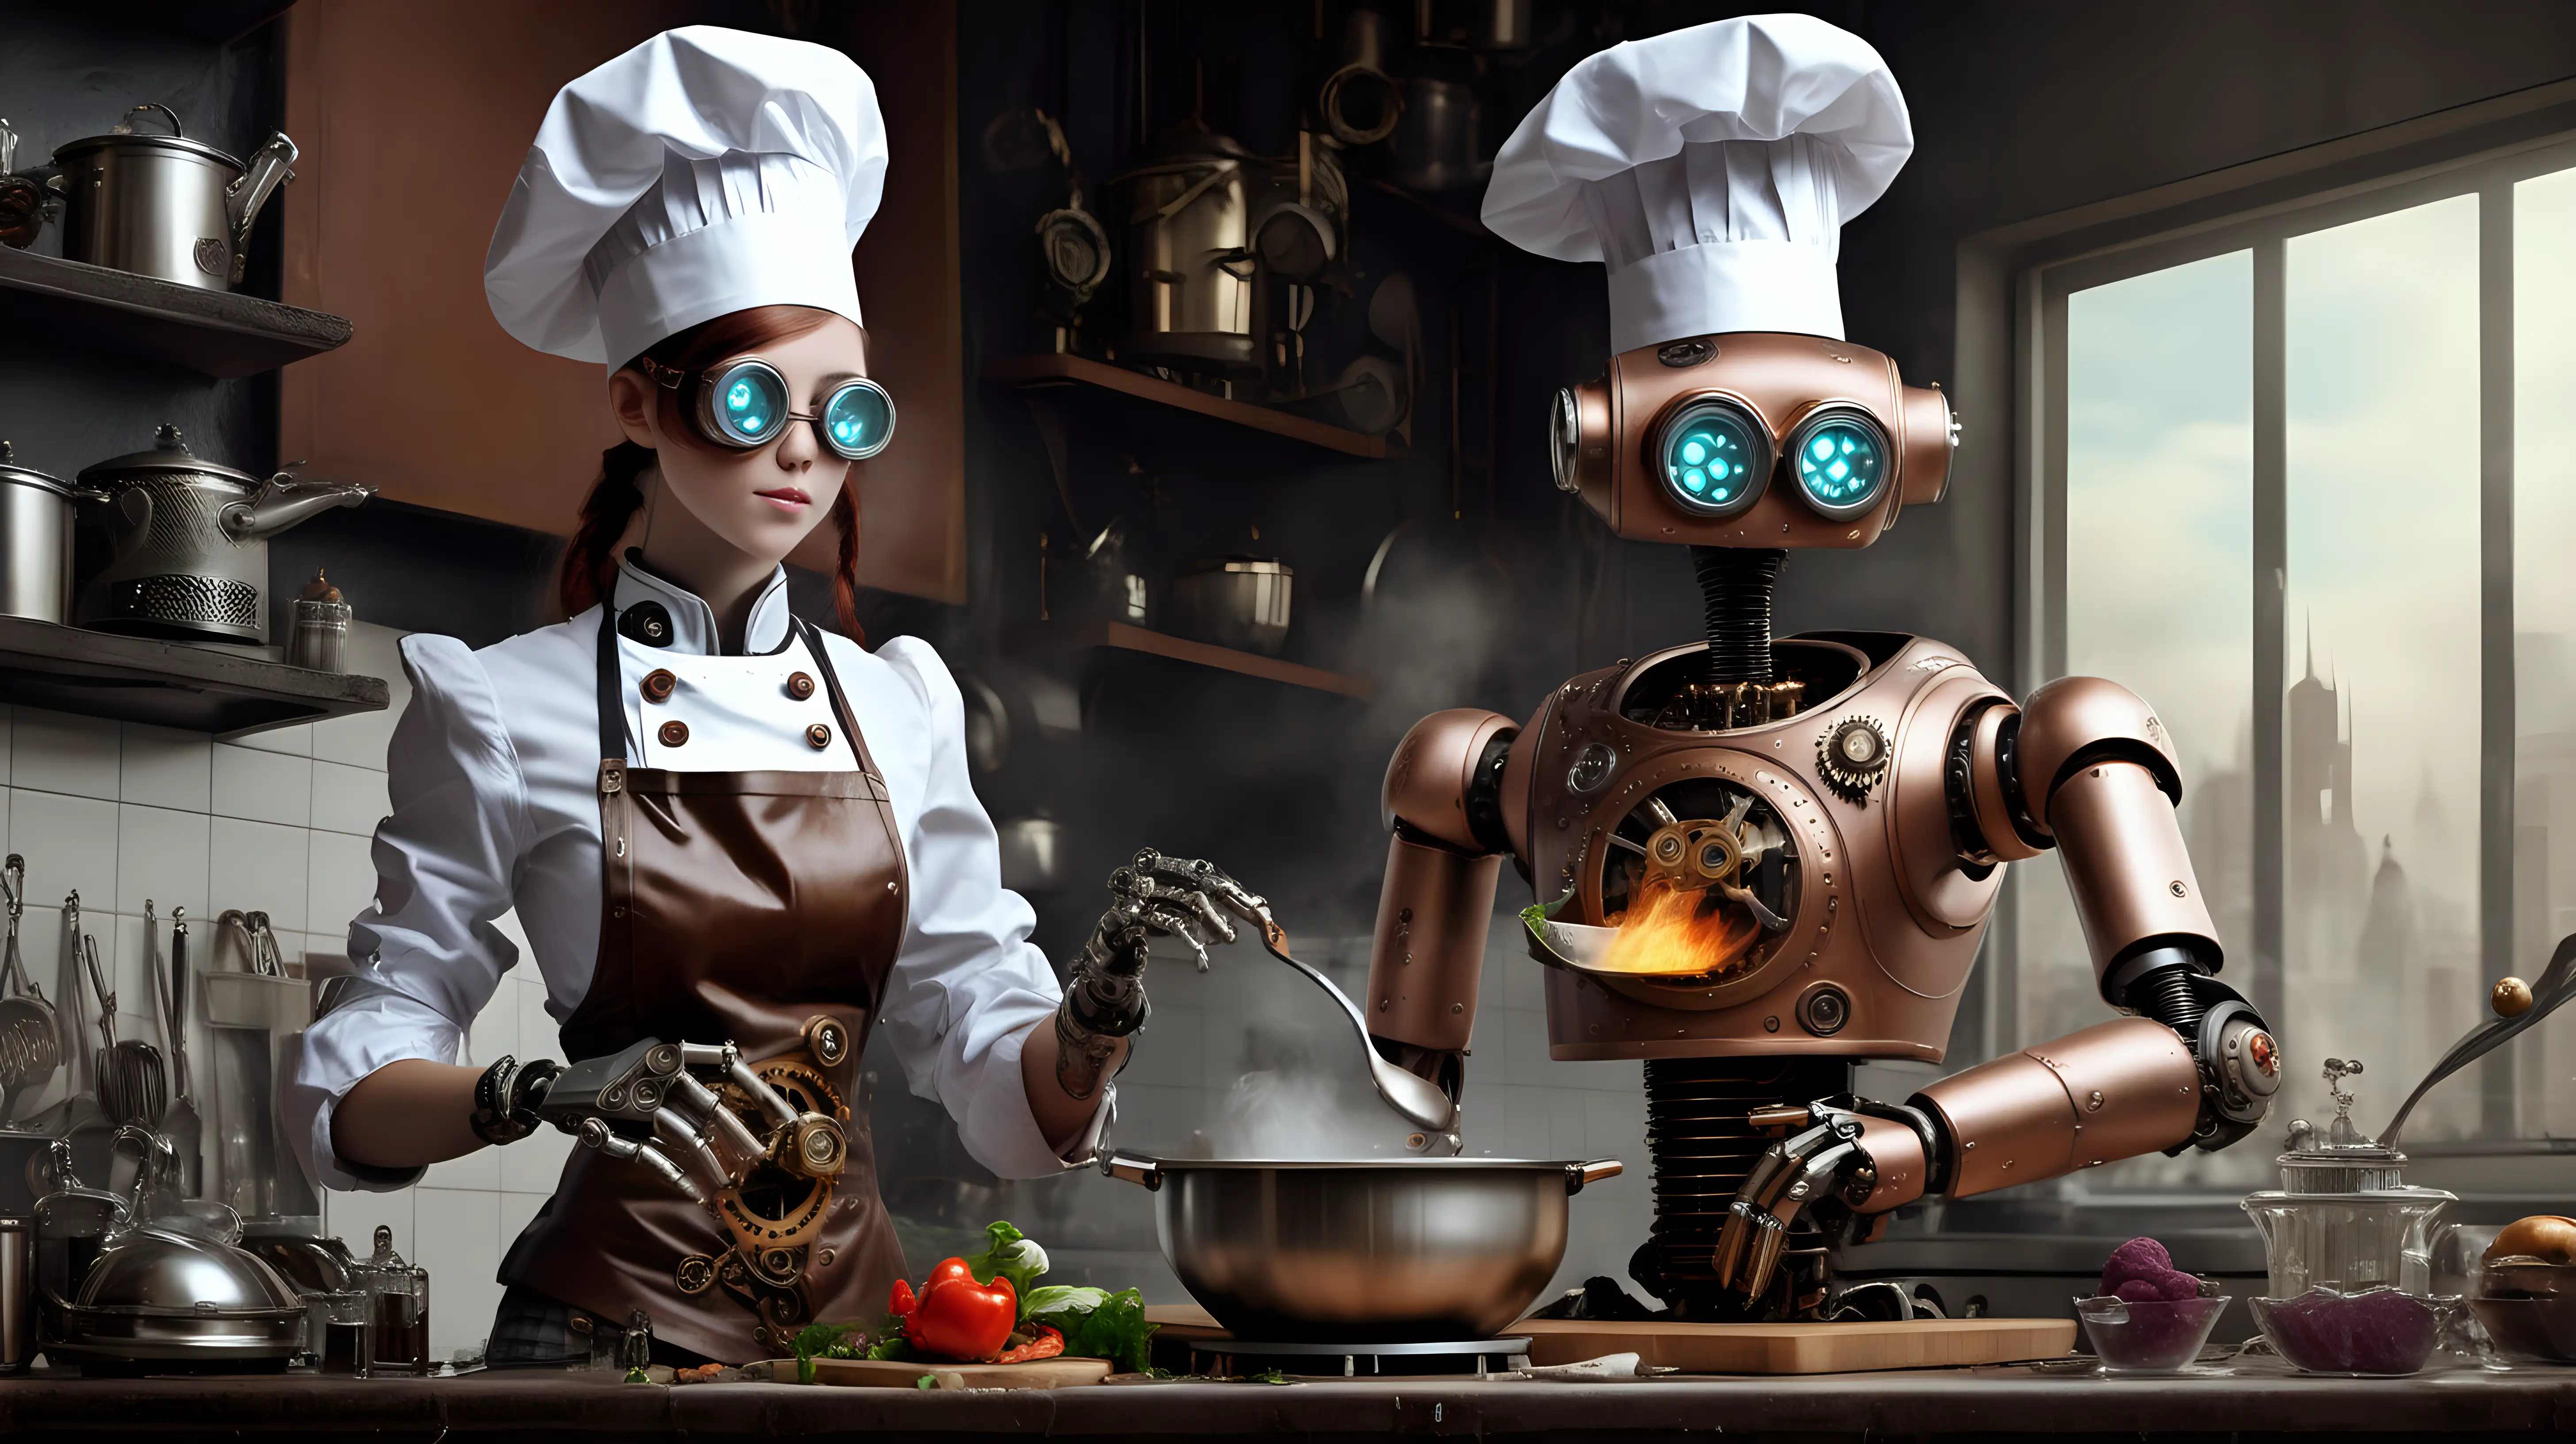 Steampunk robot, chef cooking, kitchen, girl